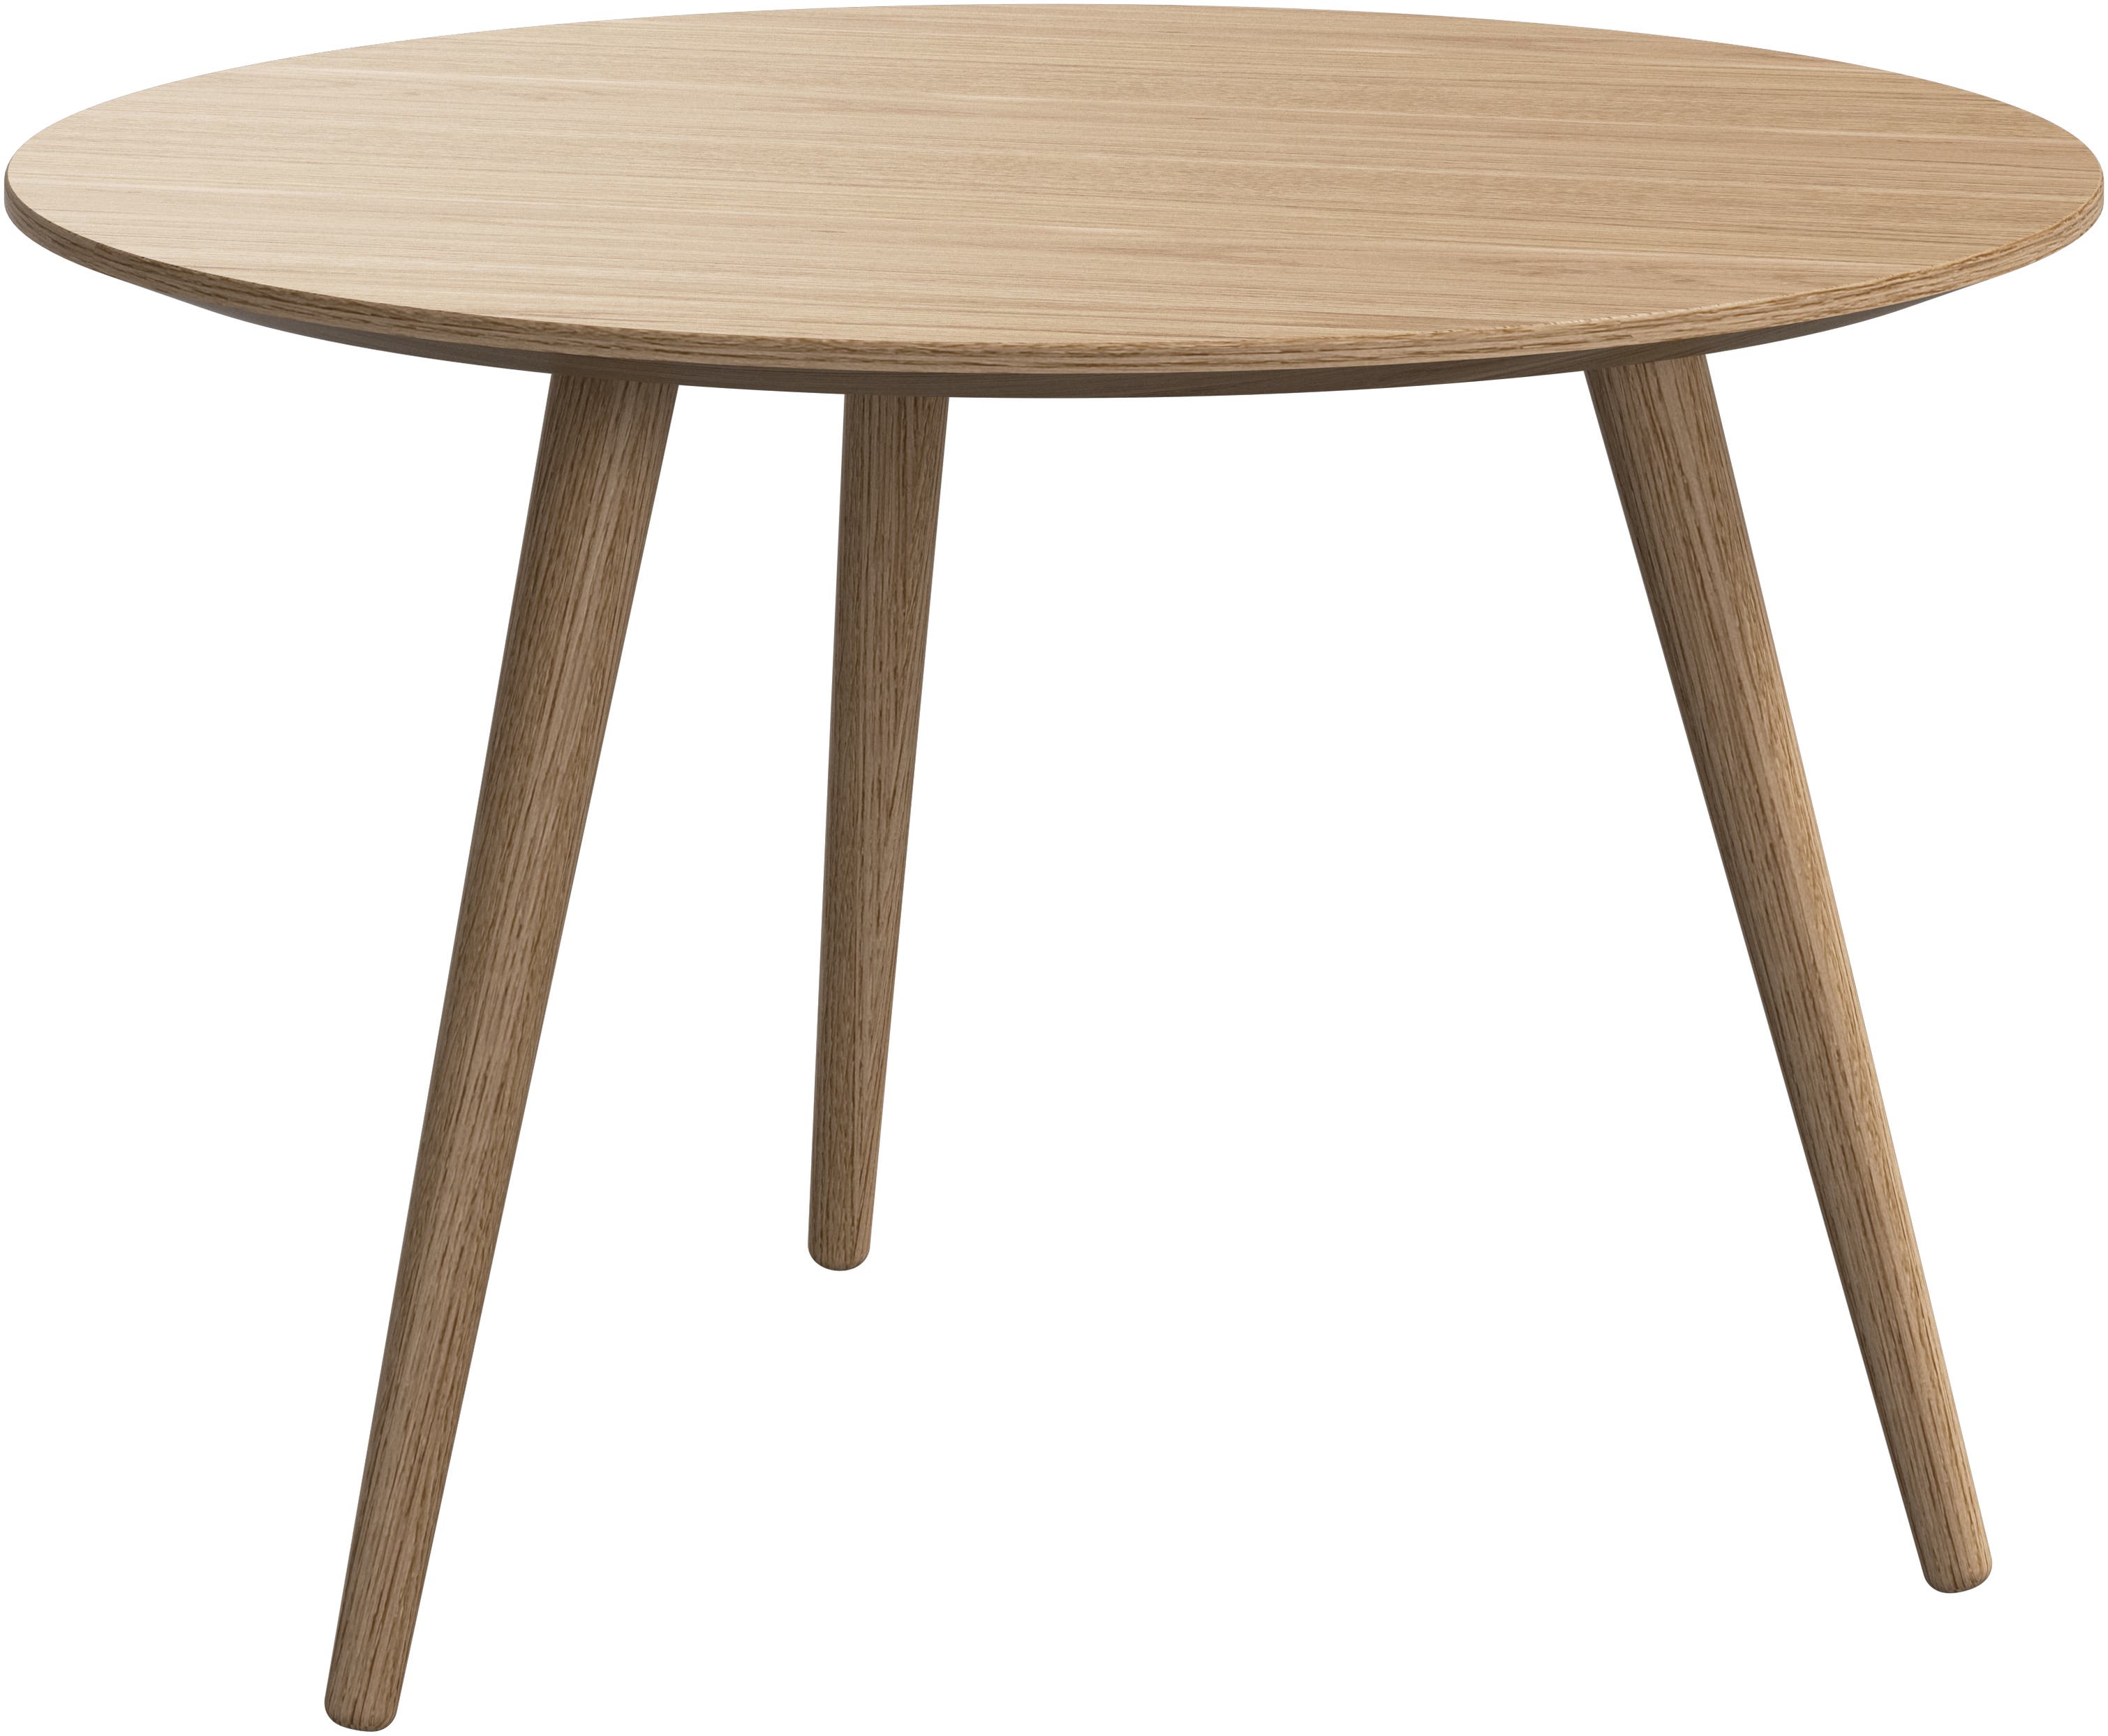 デザイナーコーヒーテーブル | すべてのデザインはこちら | ボーコンセプト